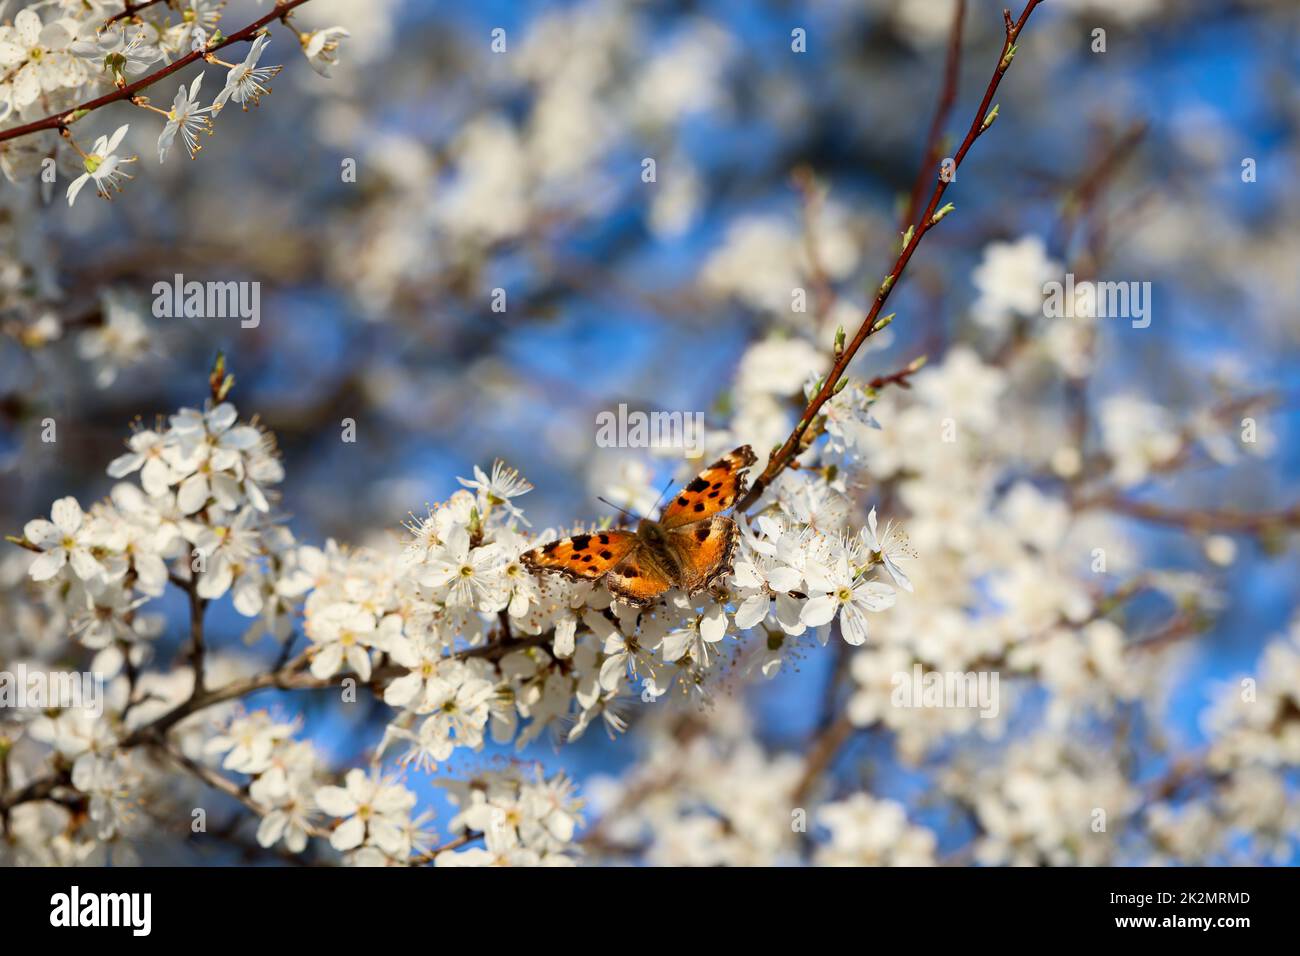 Der kleine Fuchs-Schmetterling auf den Blumen eines Obstbaums. Stockfoto